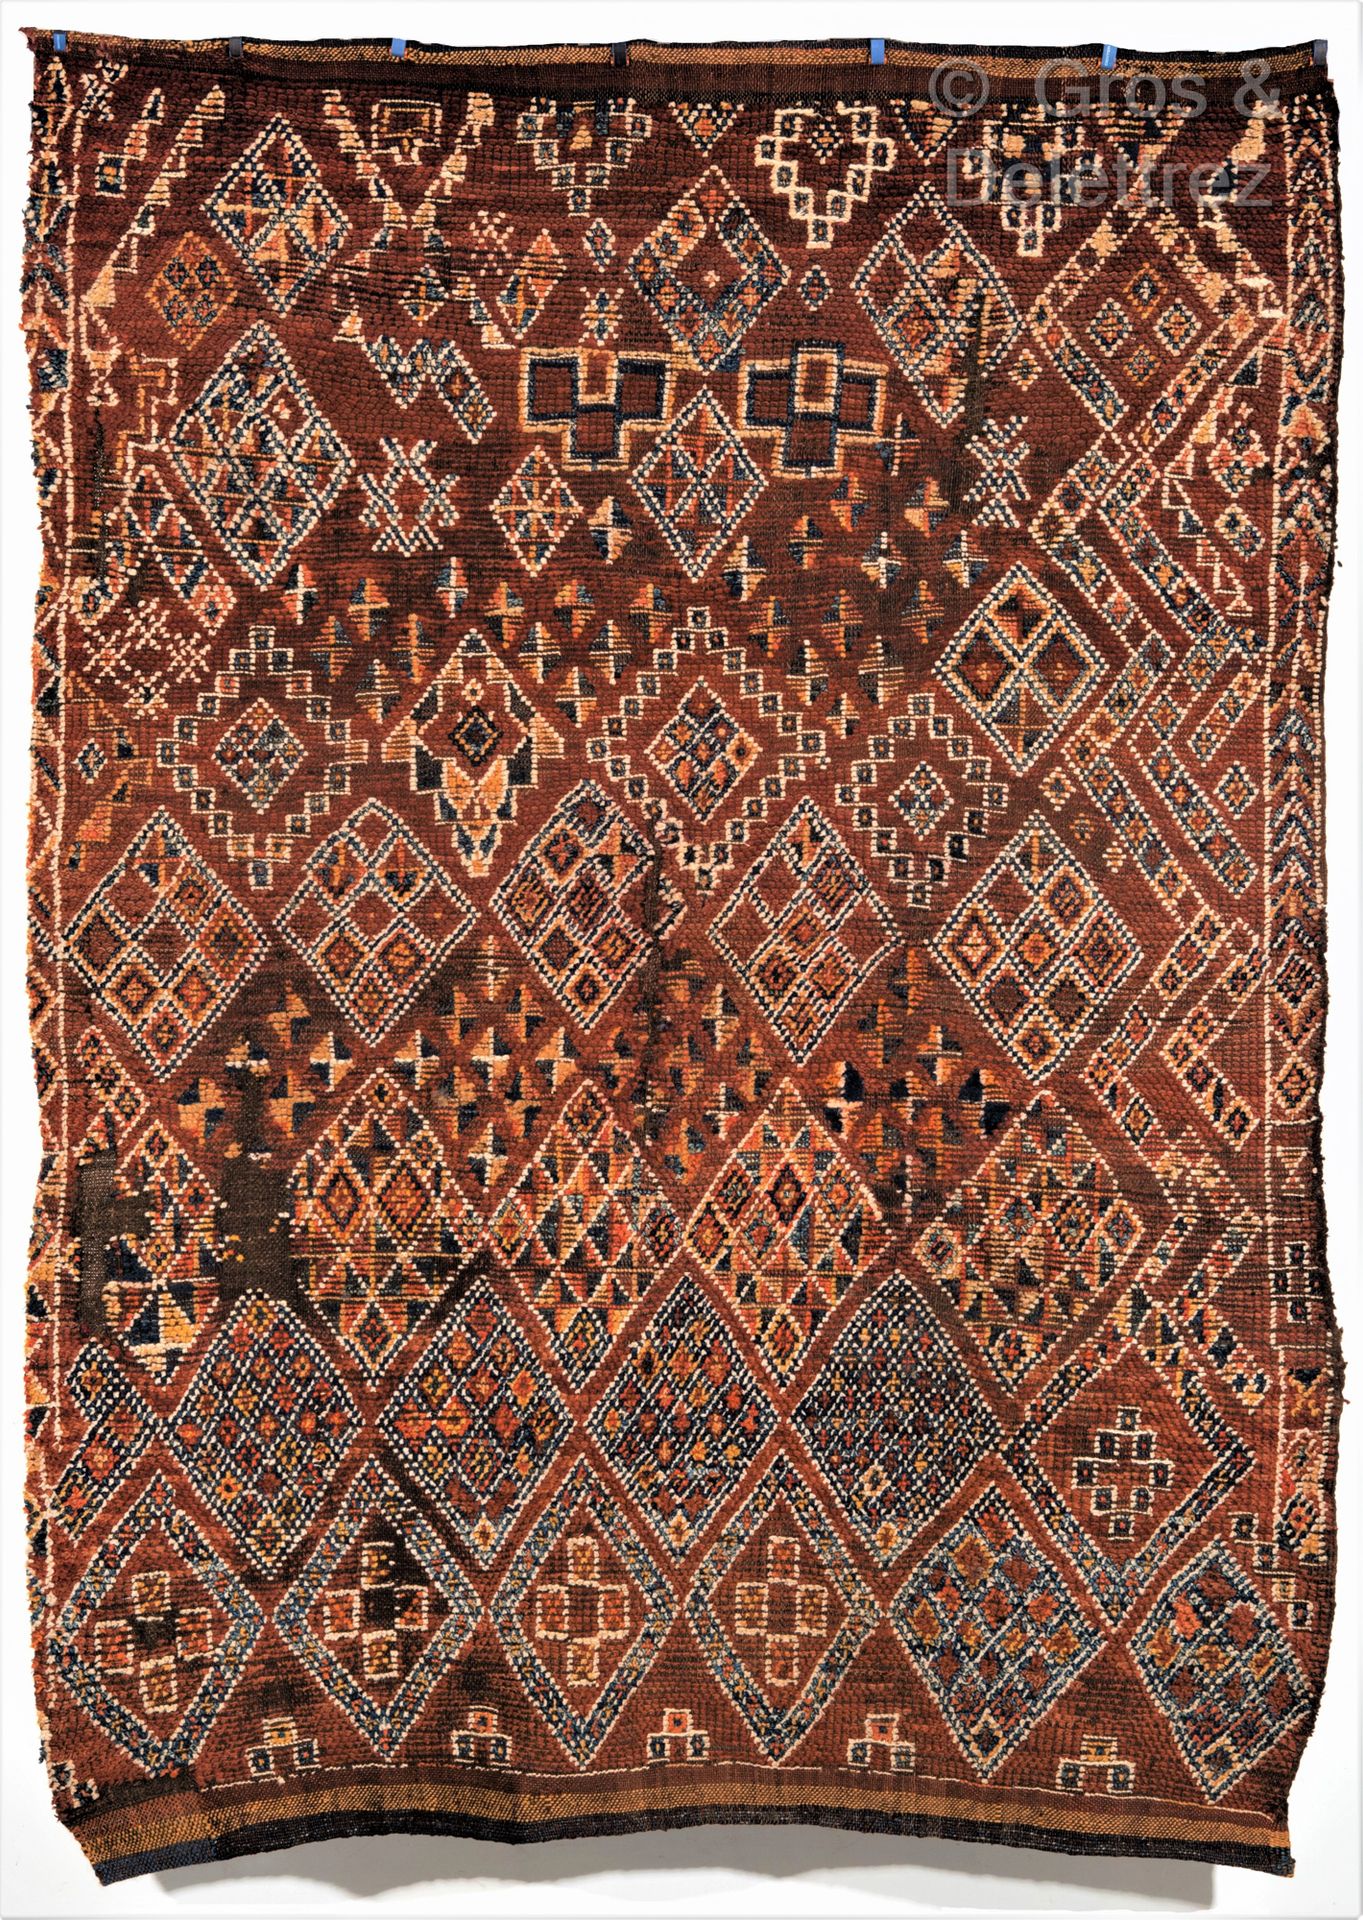 Null Un important et très ancien tapis du Maroc oriental, Maroc.

An important 1&hellip;